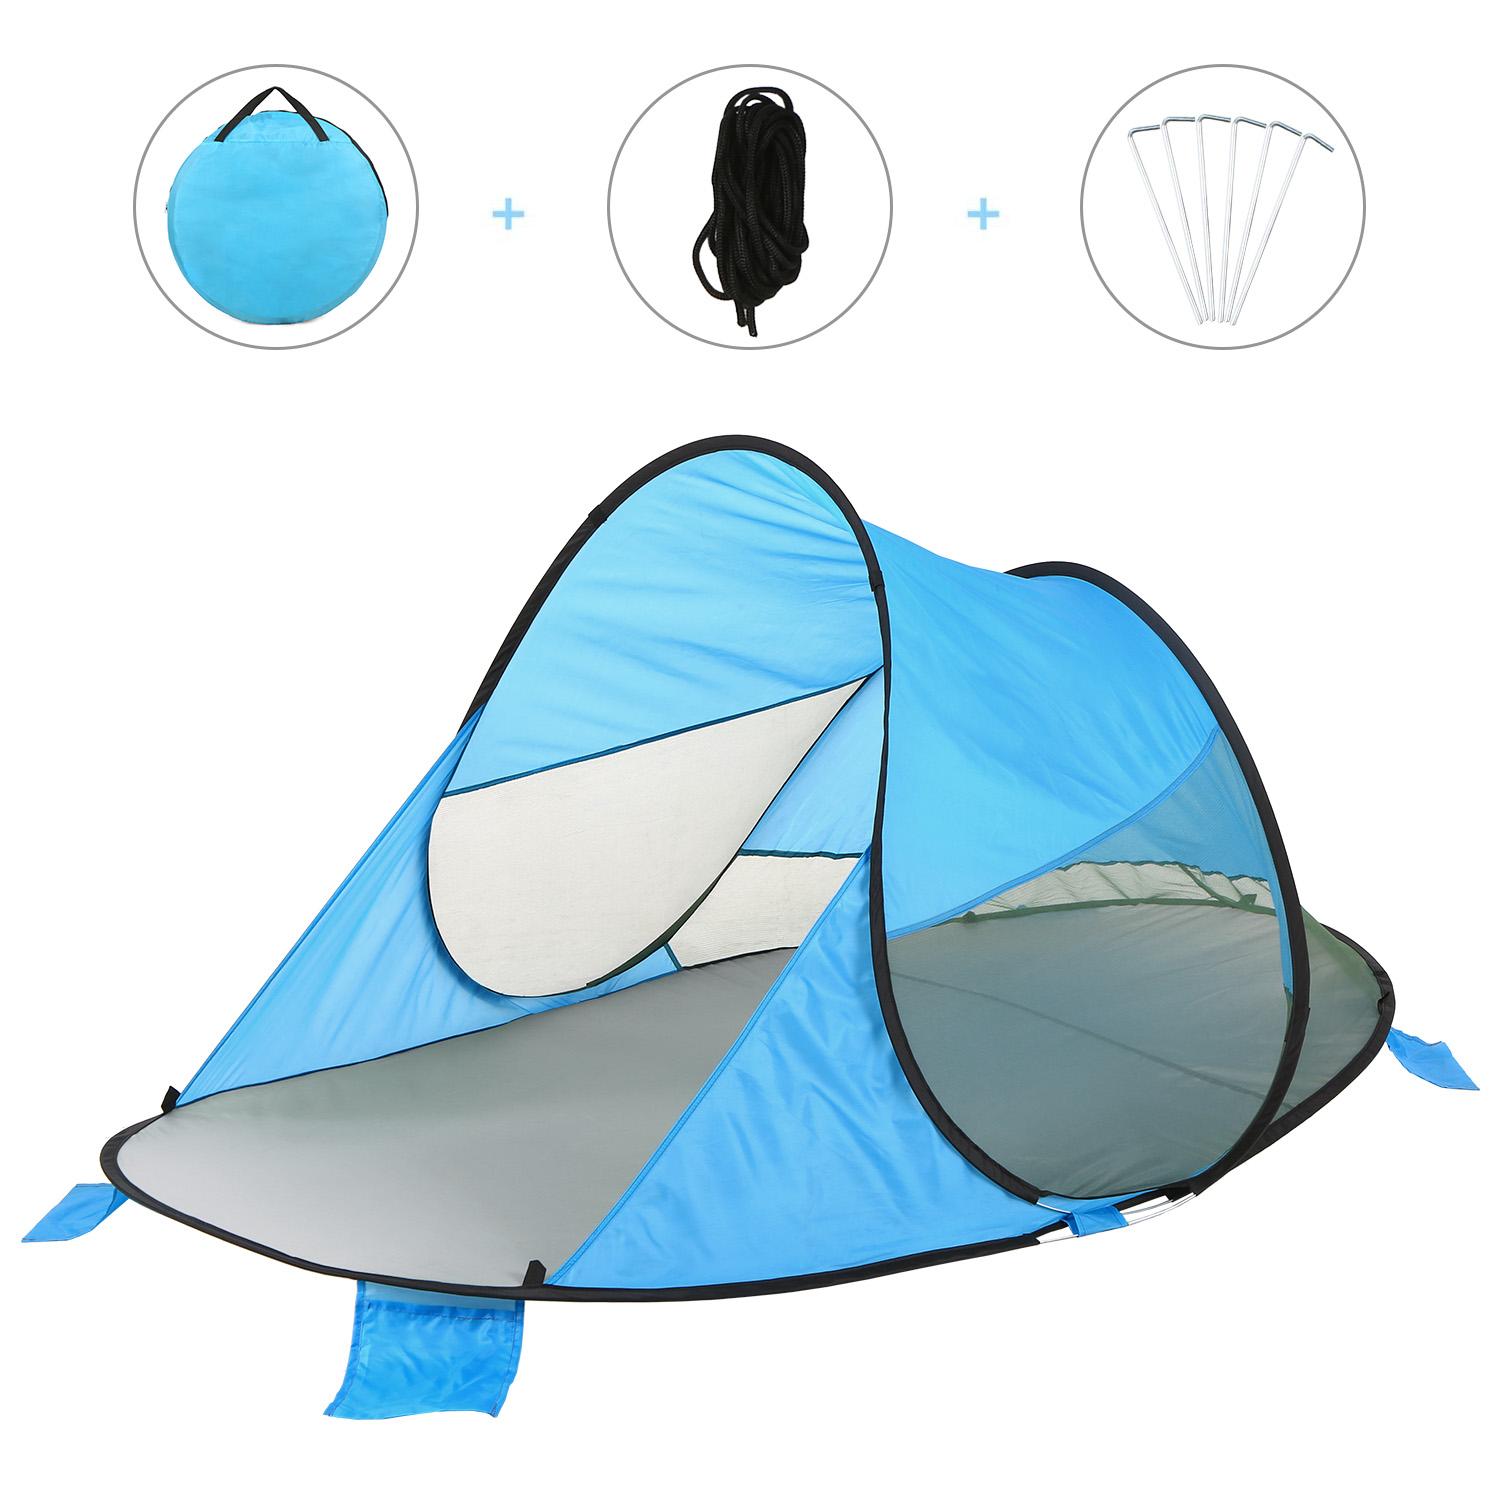 Lều che nắng tự bung làm vải polyester 190T,chống tia cực tím chống nước phù hợp đi biển cắm trại ngoài trời